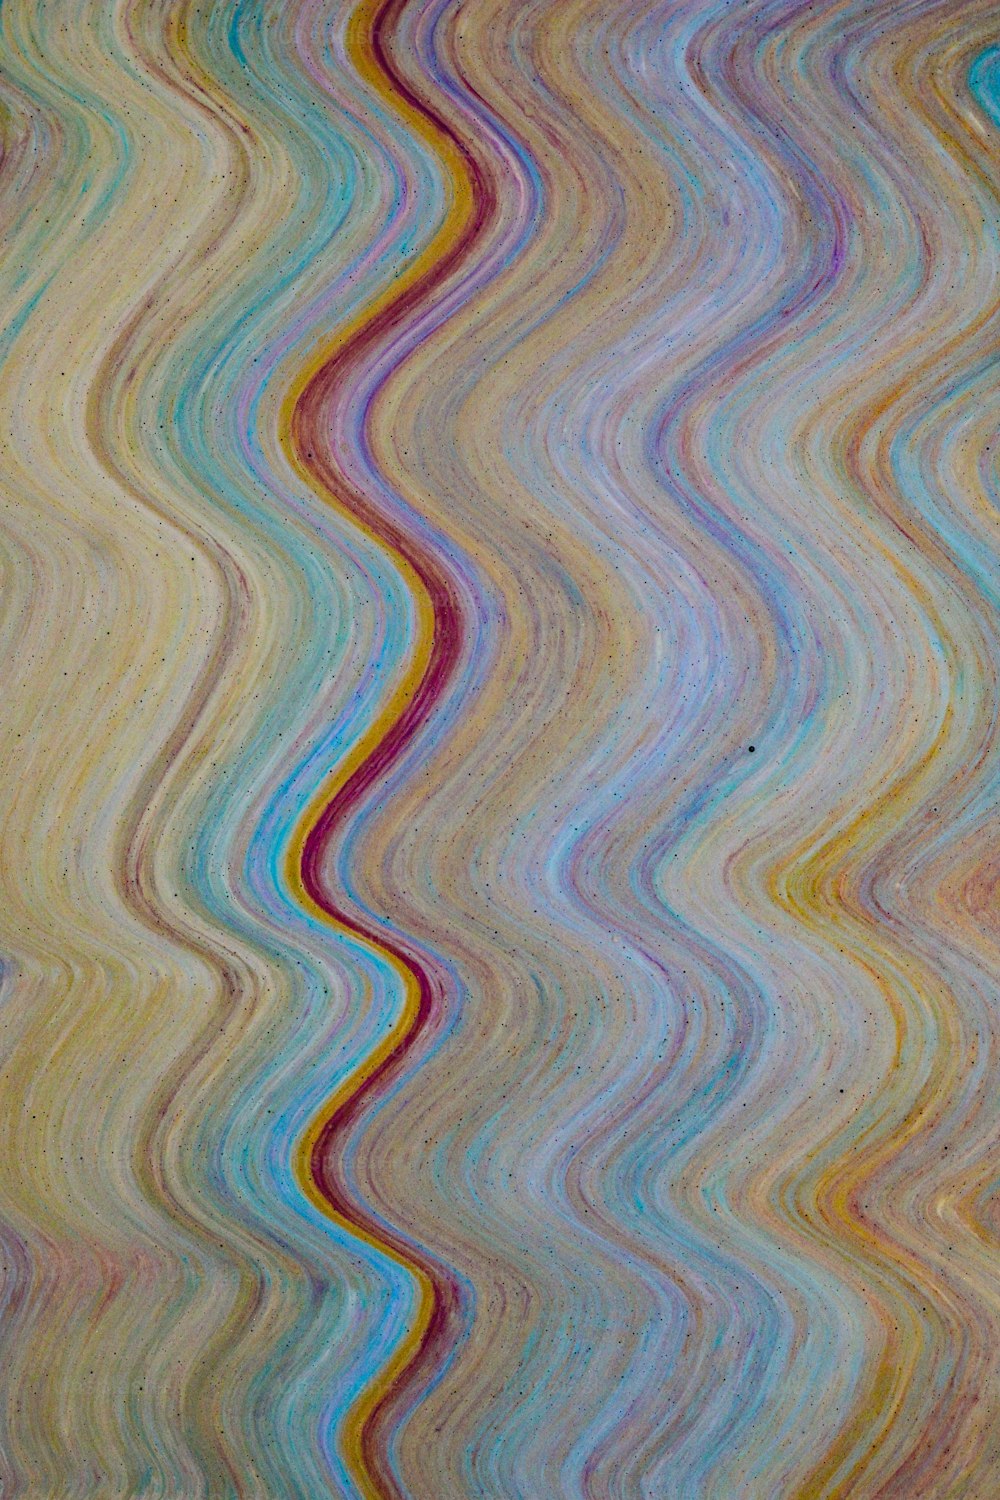 En esta imagen se muestra un patrón de onda multicolor